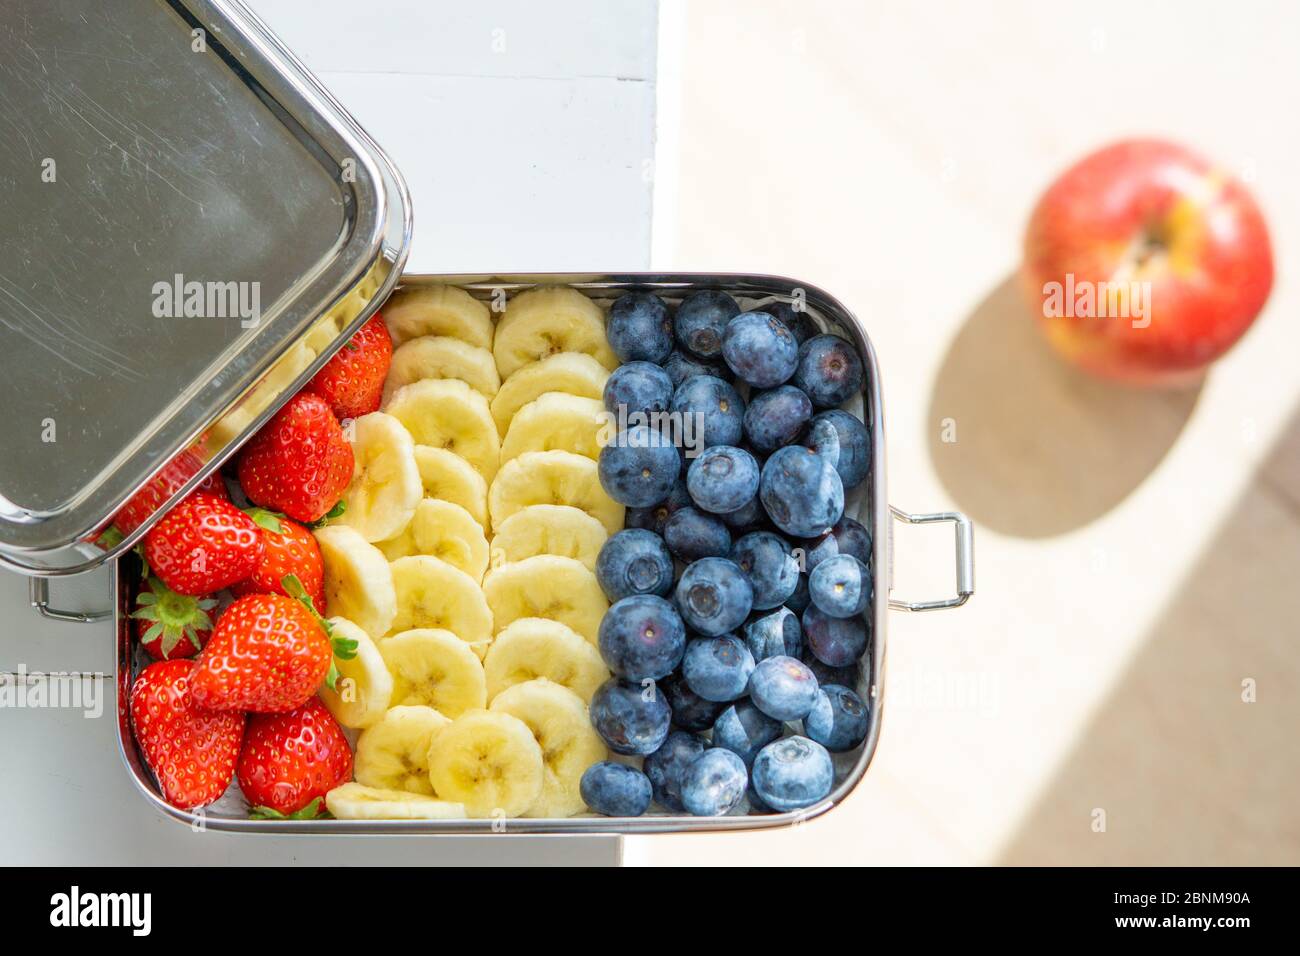 Heidelbeeren, Bananen und Erdbeeren machen einen Snack in einem großen Edelstahl-Lebensmittelbehälter. Plastikbox für Mittagessen auf dem Tisch isoliert. Roter Apfel auf dem Hintergrund. Keine Verschwendung, umweltfreundlich. Stockfoto